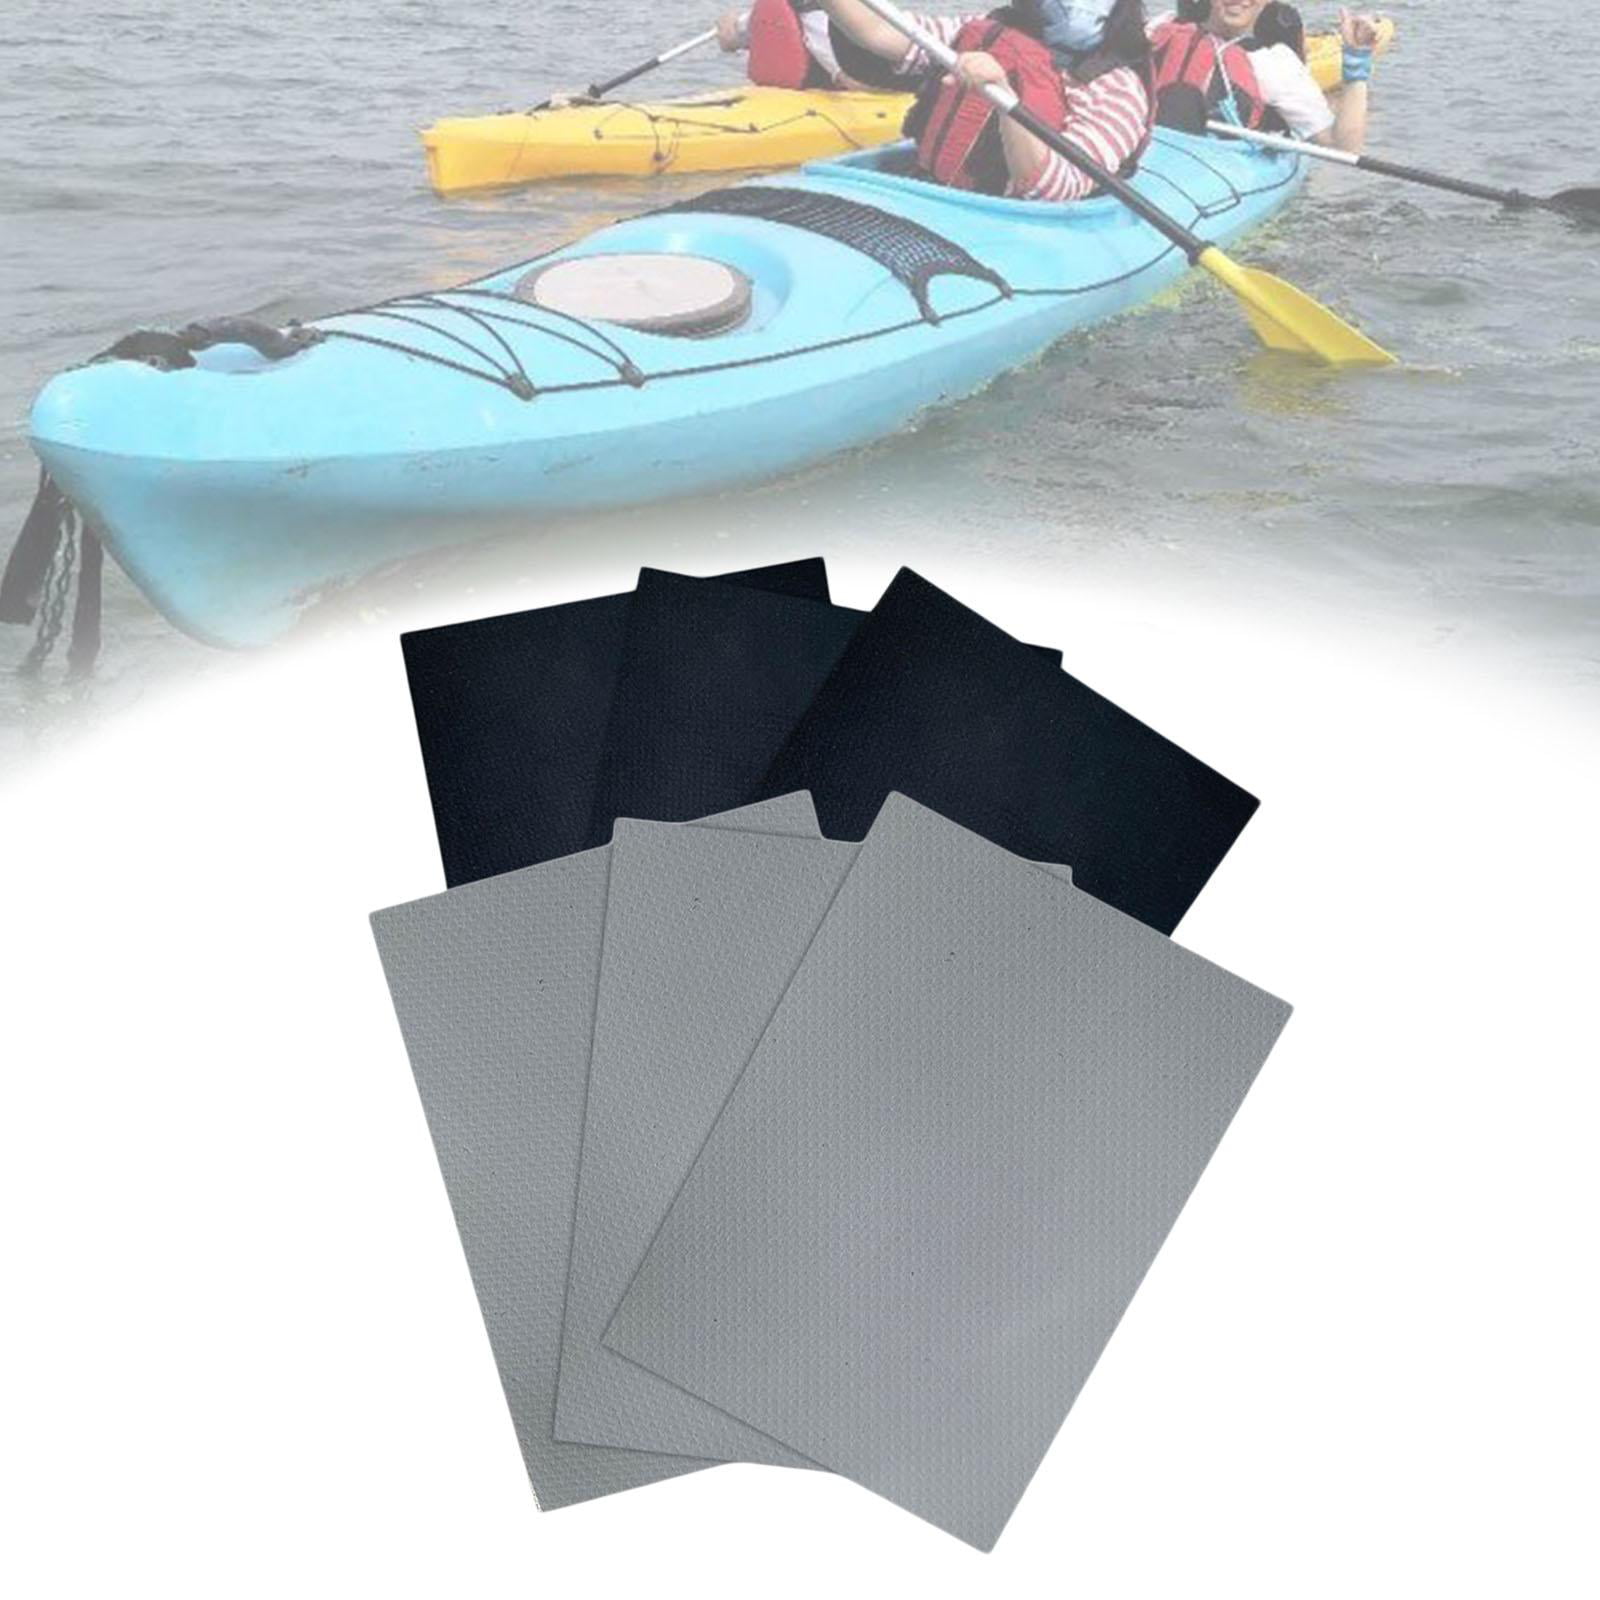 Inflatable Boat Kayak Canoe Repair Kit Waterproof PVC Patch Emergency Rescue 